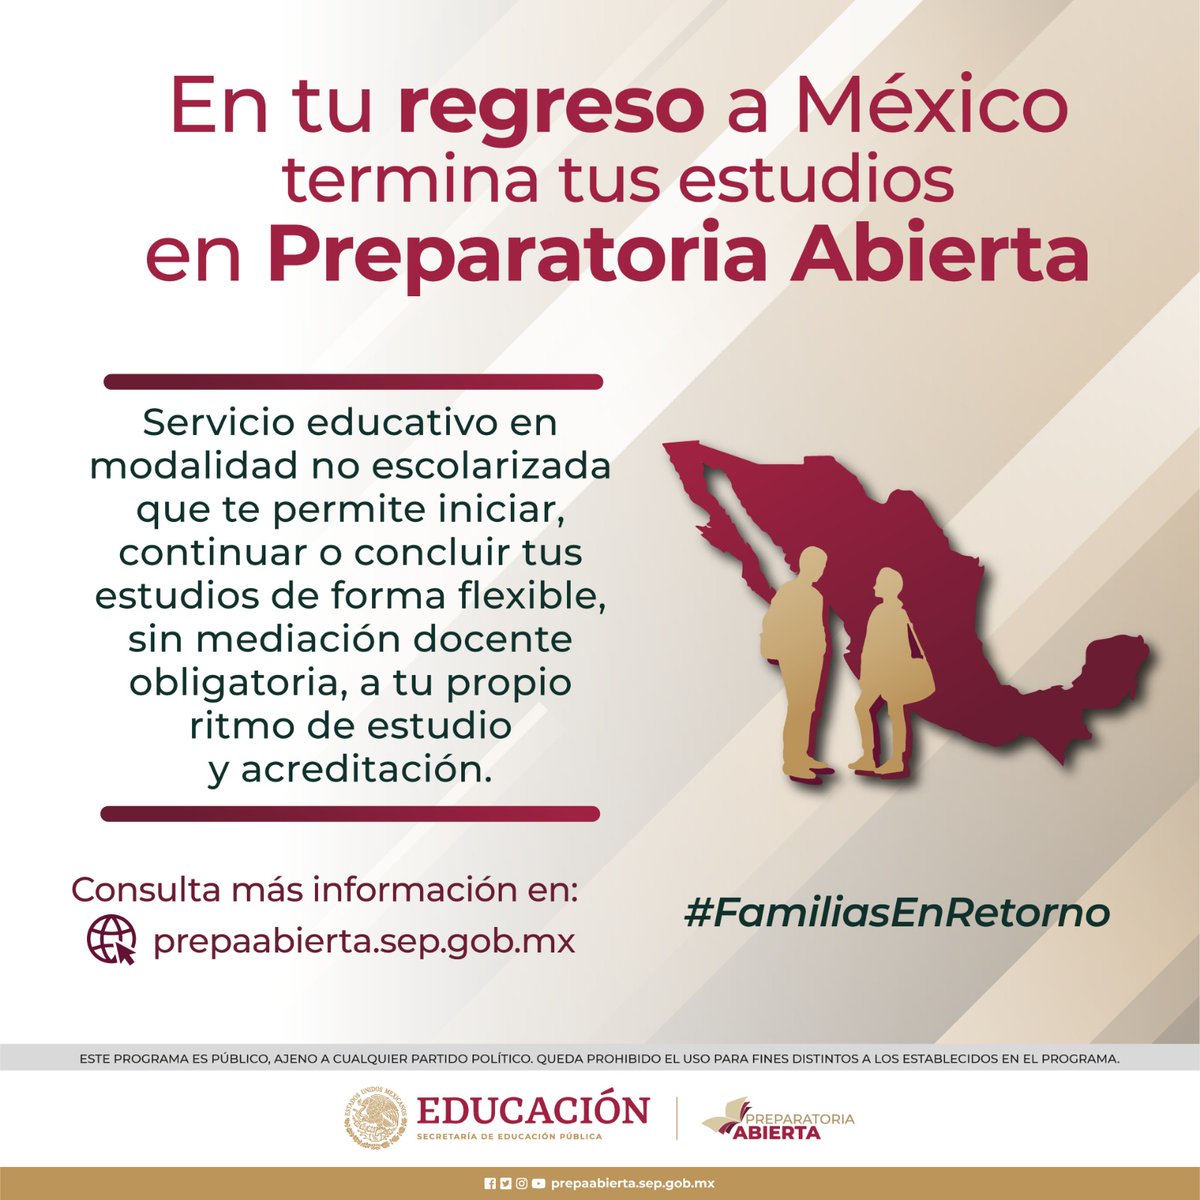 Tu regreso a México con más oportunidades de Educación. Inicia tu bachillerato 🎓🌟 con #PrepaAbierta de la @SEP_mx . Estudia a tu ritmo y obtén tu certificado. ¡No esperes más! #EducaciónSinFronteras #FamiliasEnRetorno #EducaciónIME Visita: prepaabierta.sep.gob.mx @SRE_mx